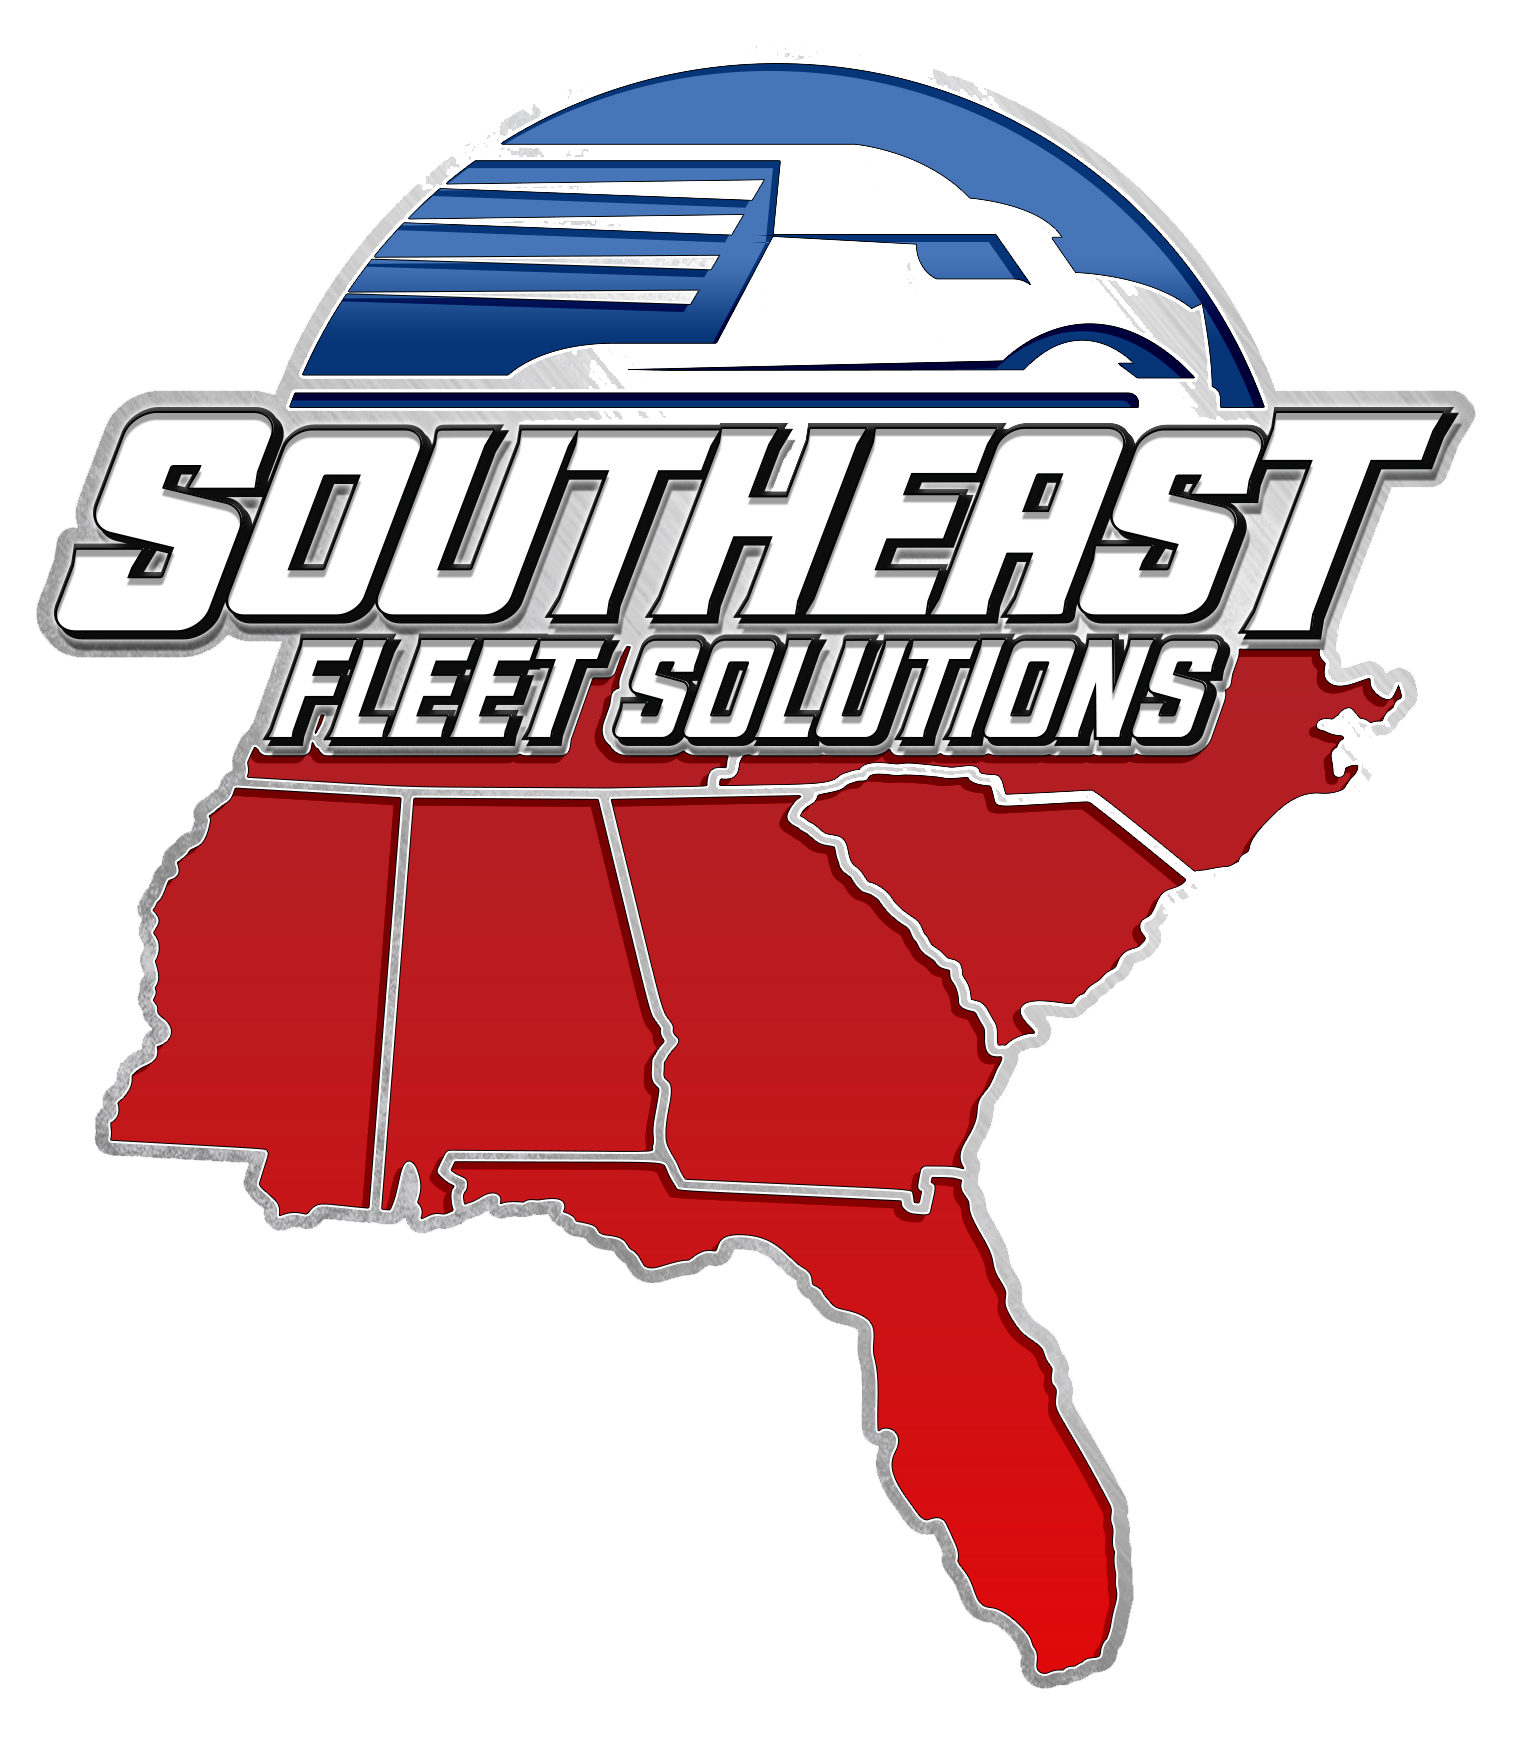 Southeast Fleet Solutions